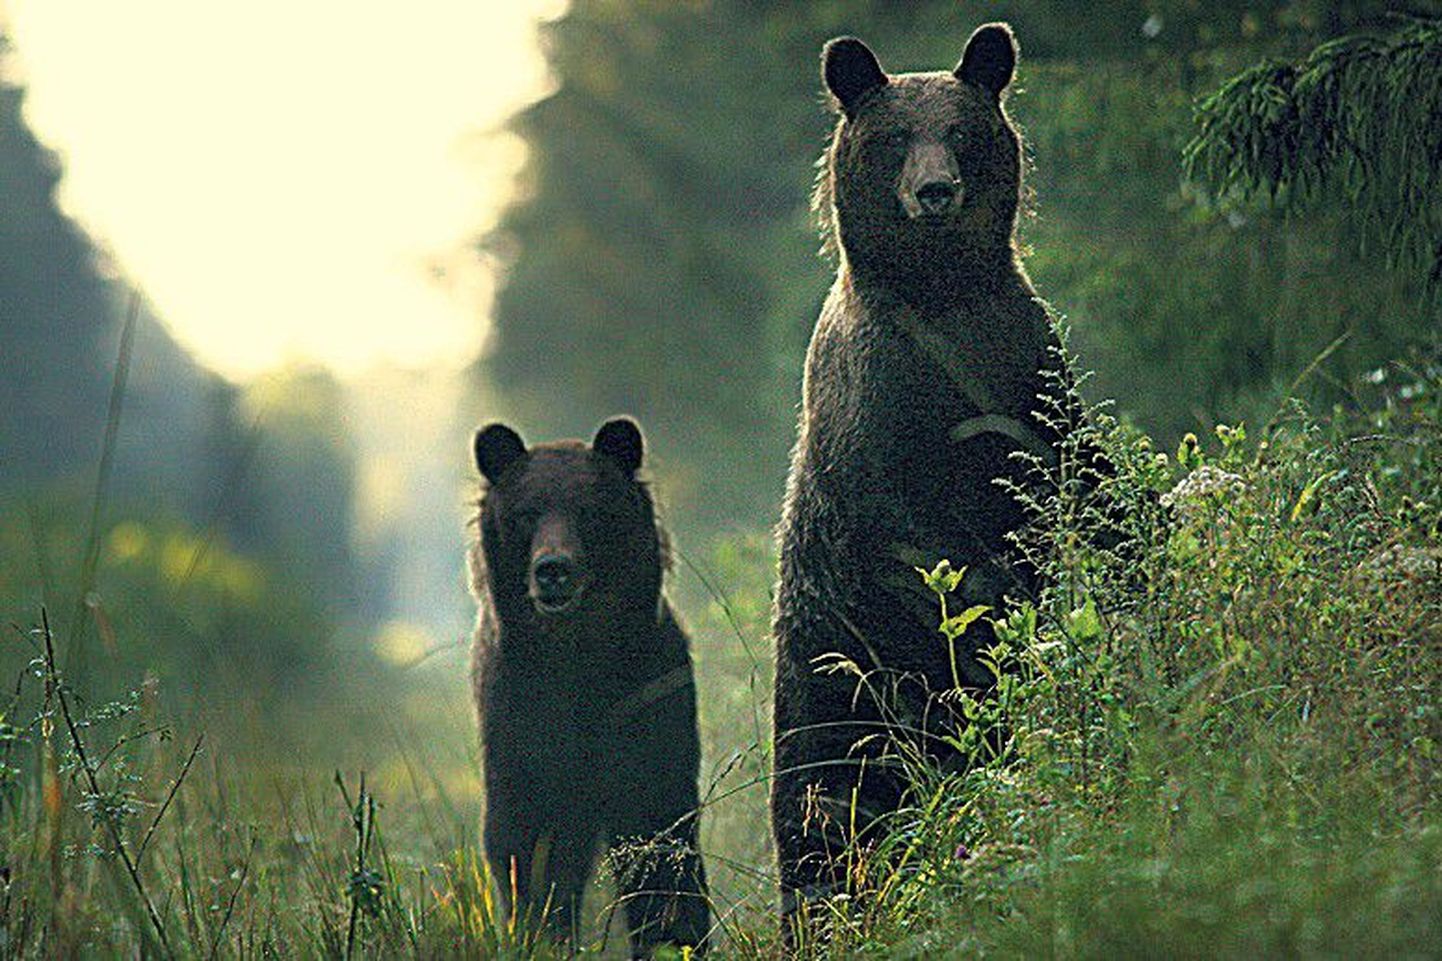 Karud muudkui tulid ja tulid ligemale... See foto näitab, et metsaelanikud on vähemalt sama uudishimulikud kui loodusfotograaf.